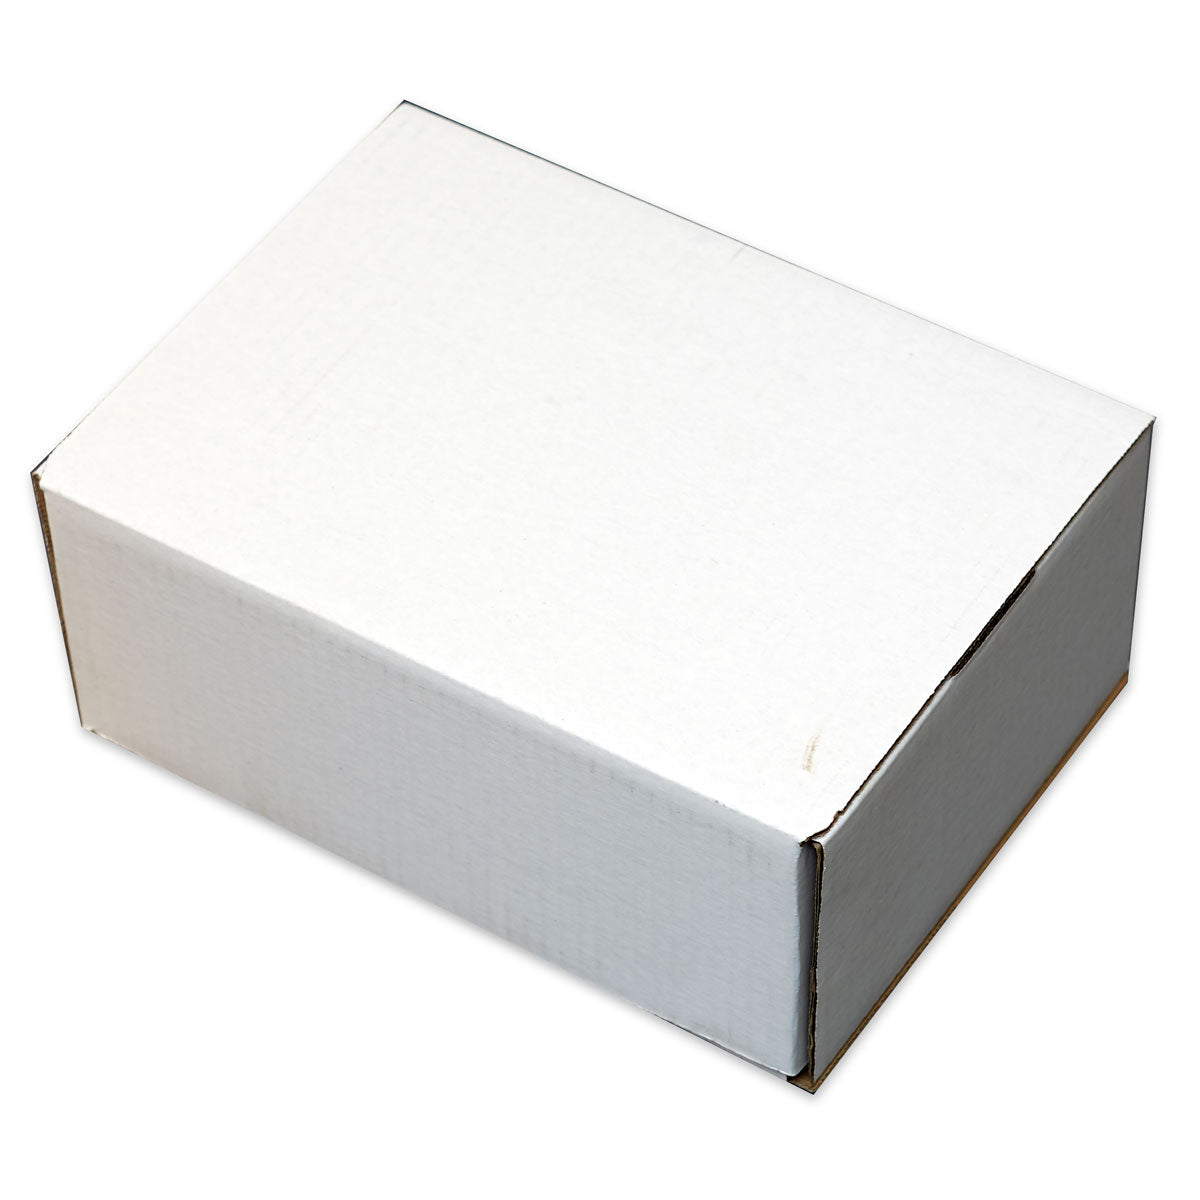 White Gift Box 11 1/8" x 8 3/4" x 5"